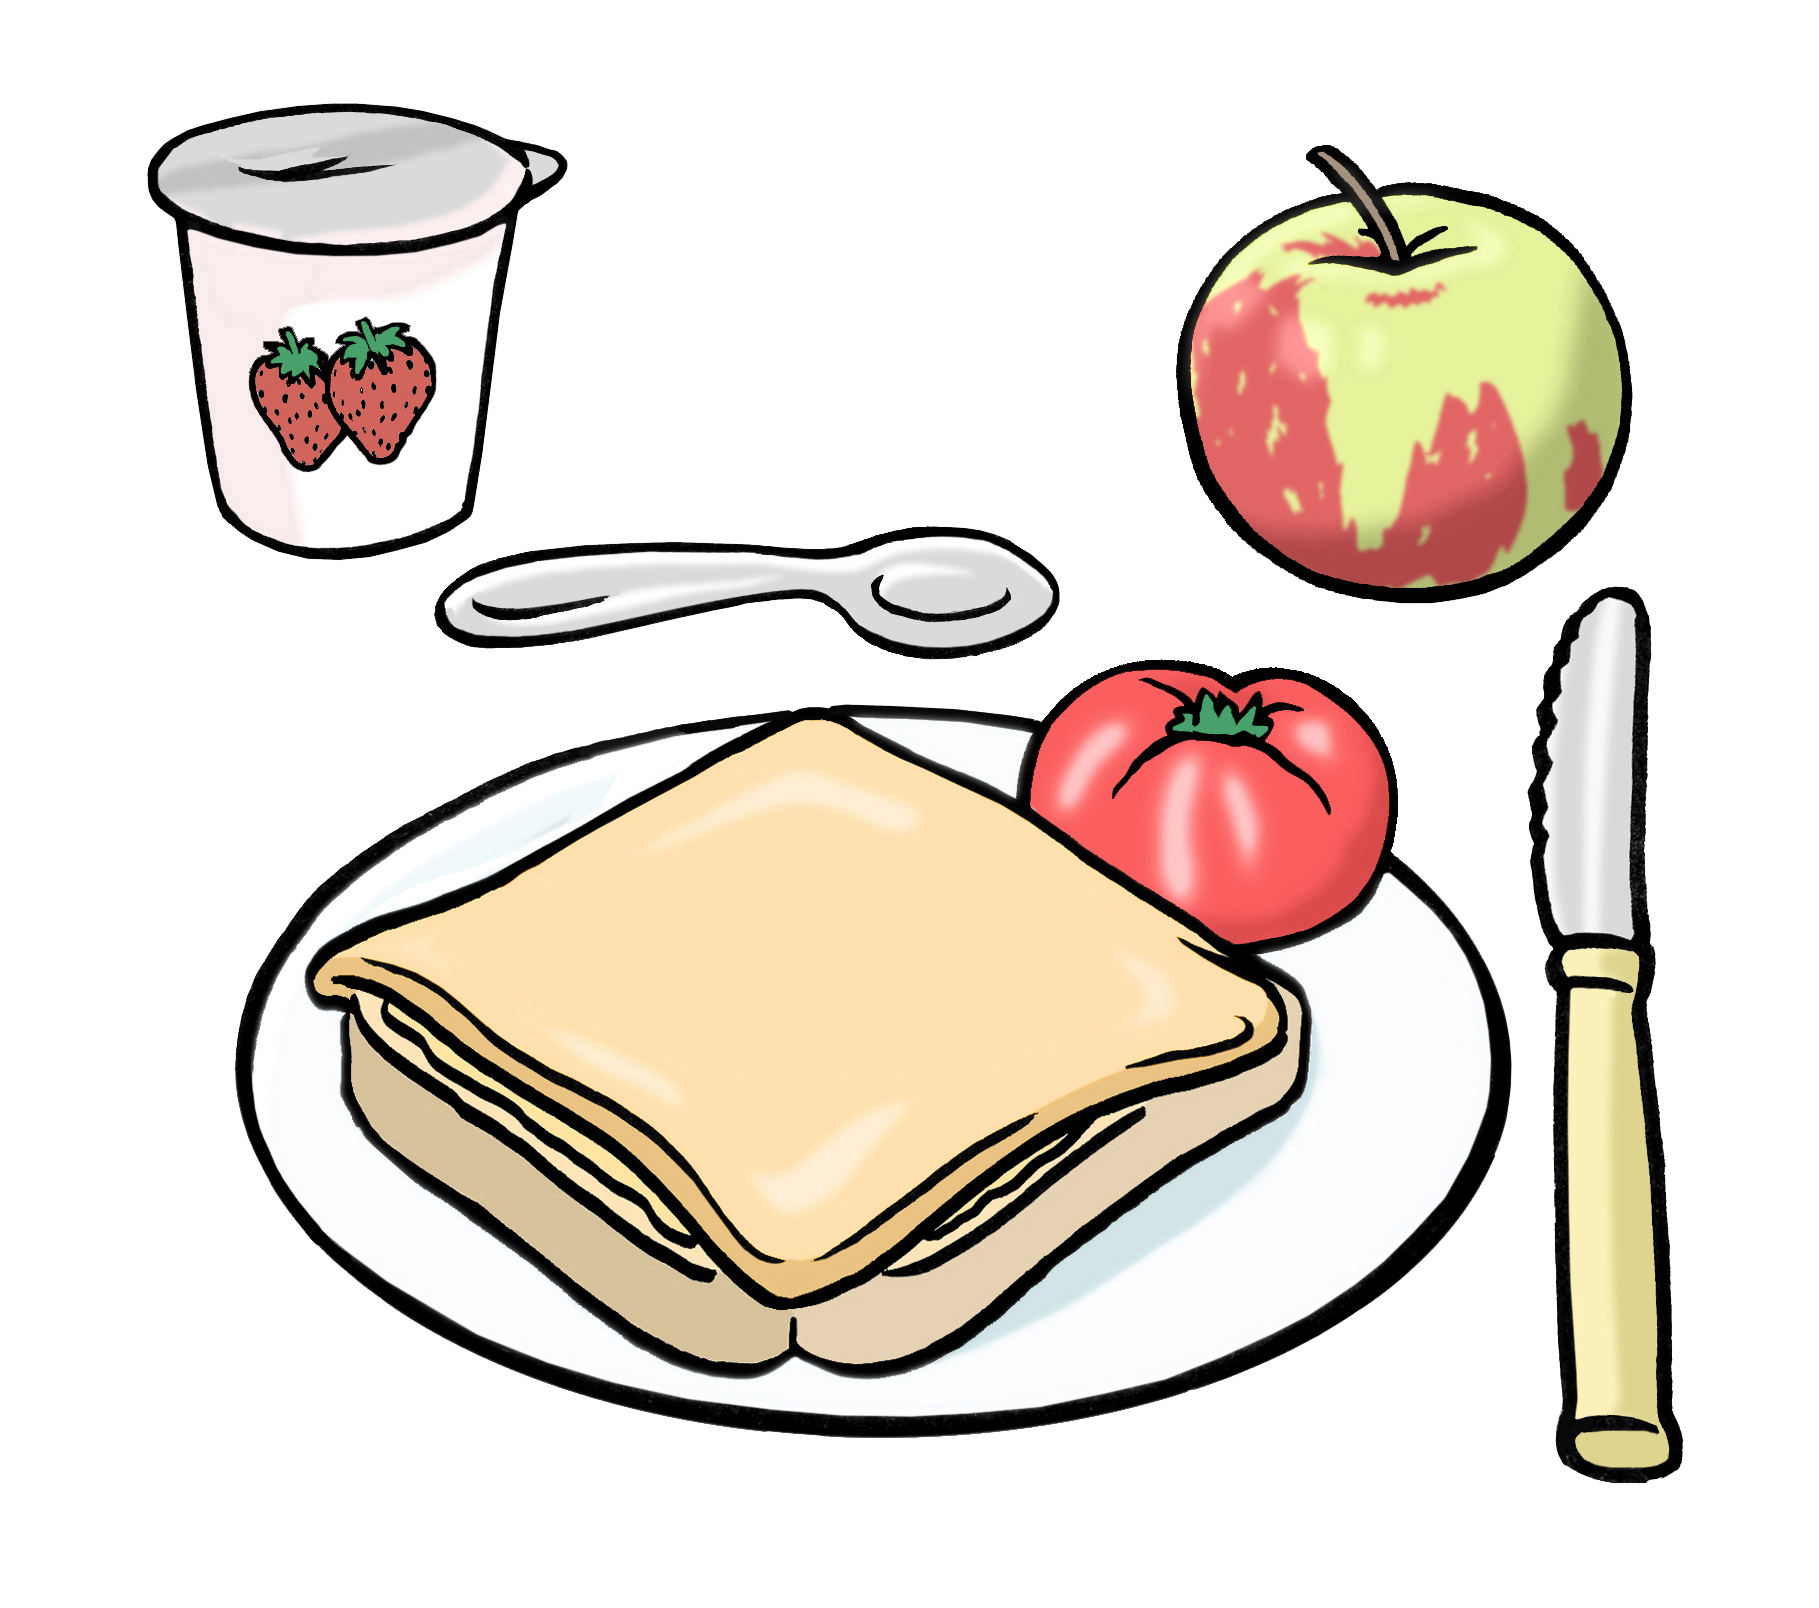 Leichte Sprache Bild: Ein Teller mit einem Sandwich, daneben eine Tomate, ein Apfel und ein Joghurt